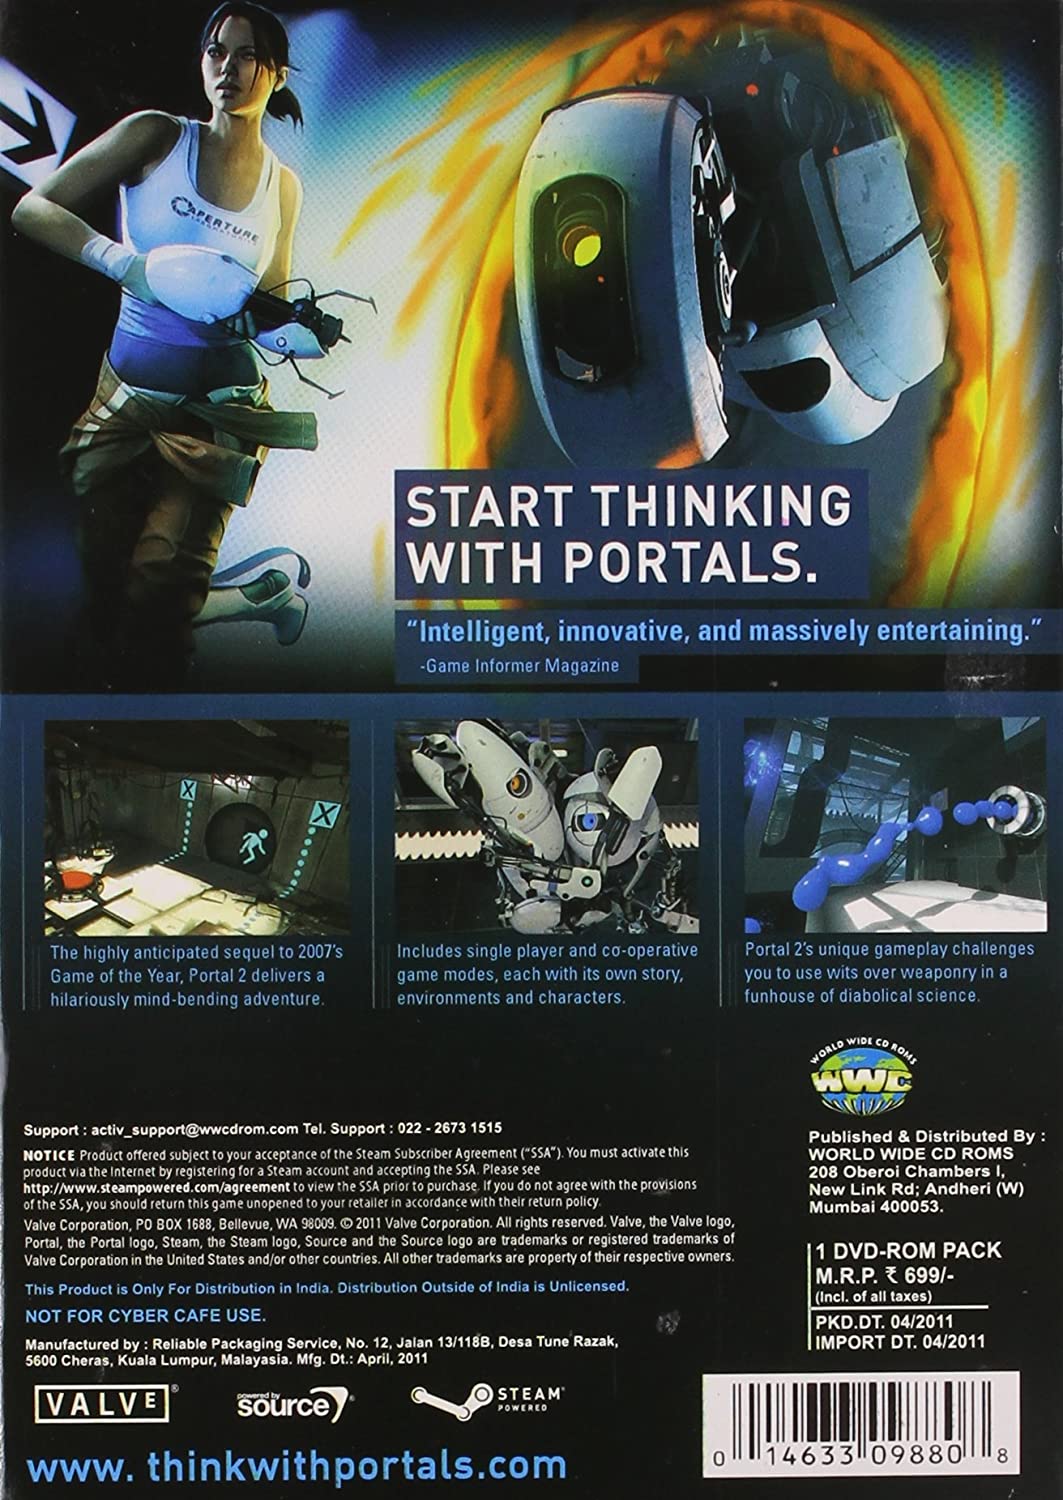 portal 2 free download full game pc non steam